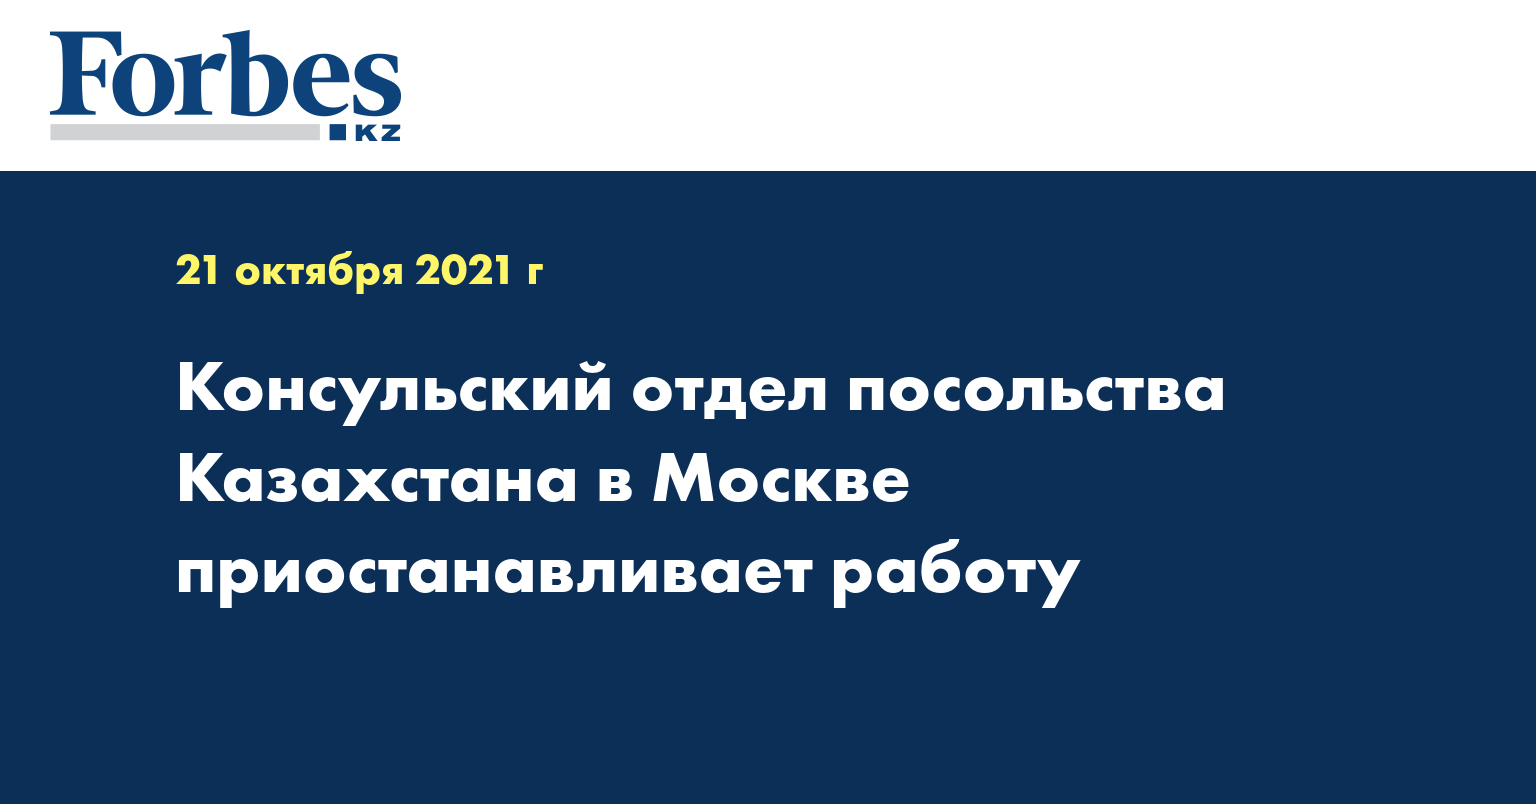 Консульский отдел посольства Казахстана в Москве приостанавливает работу